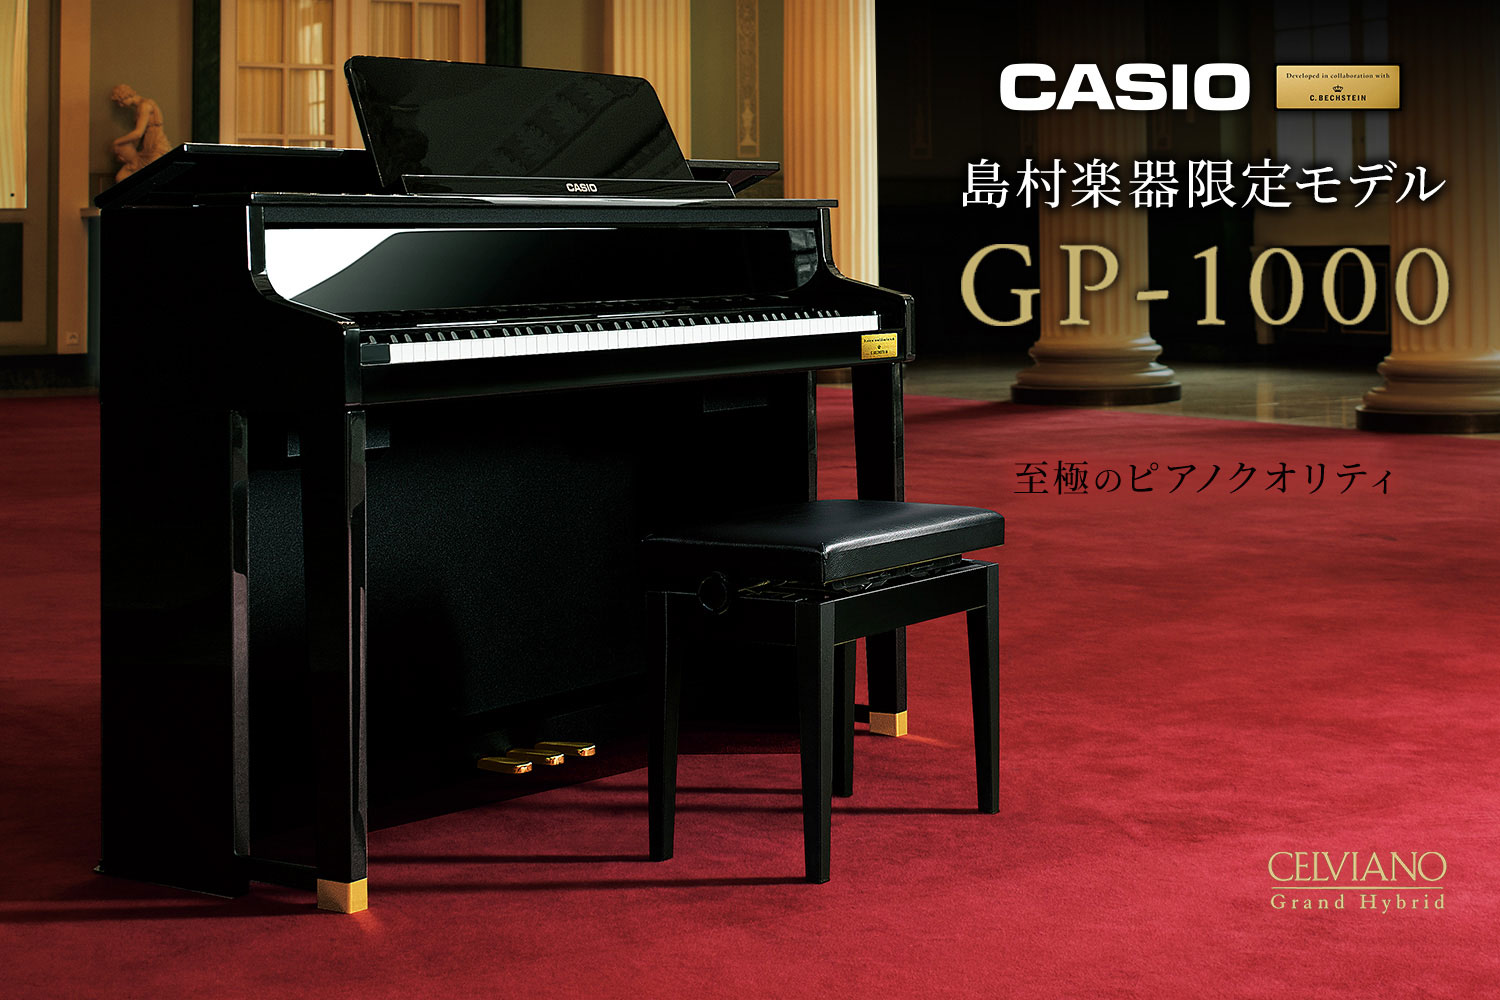 【CASIO/カシオ】CASIO×C.ベヒシュタイン コラボレーション電子ピアノに島村楽器限定モデル「GP-1000」が新登場！